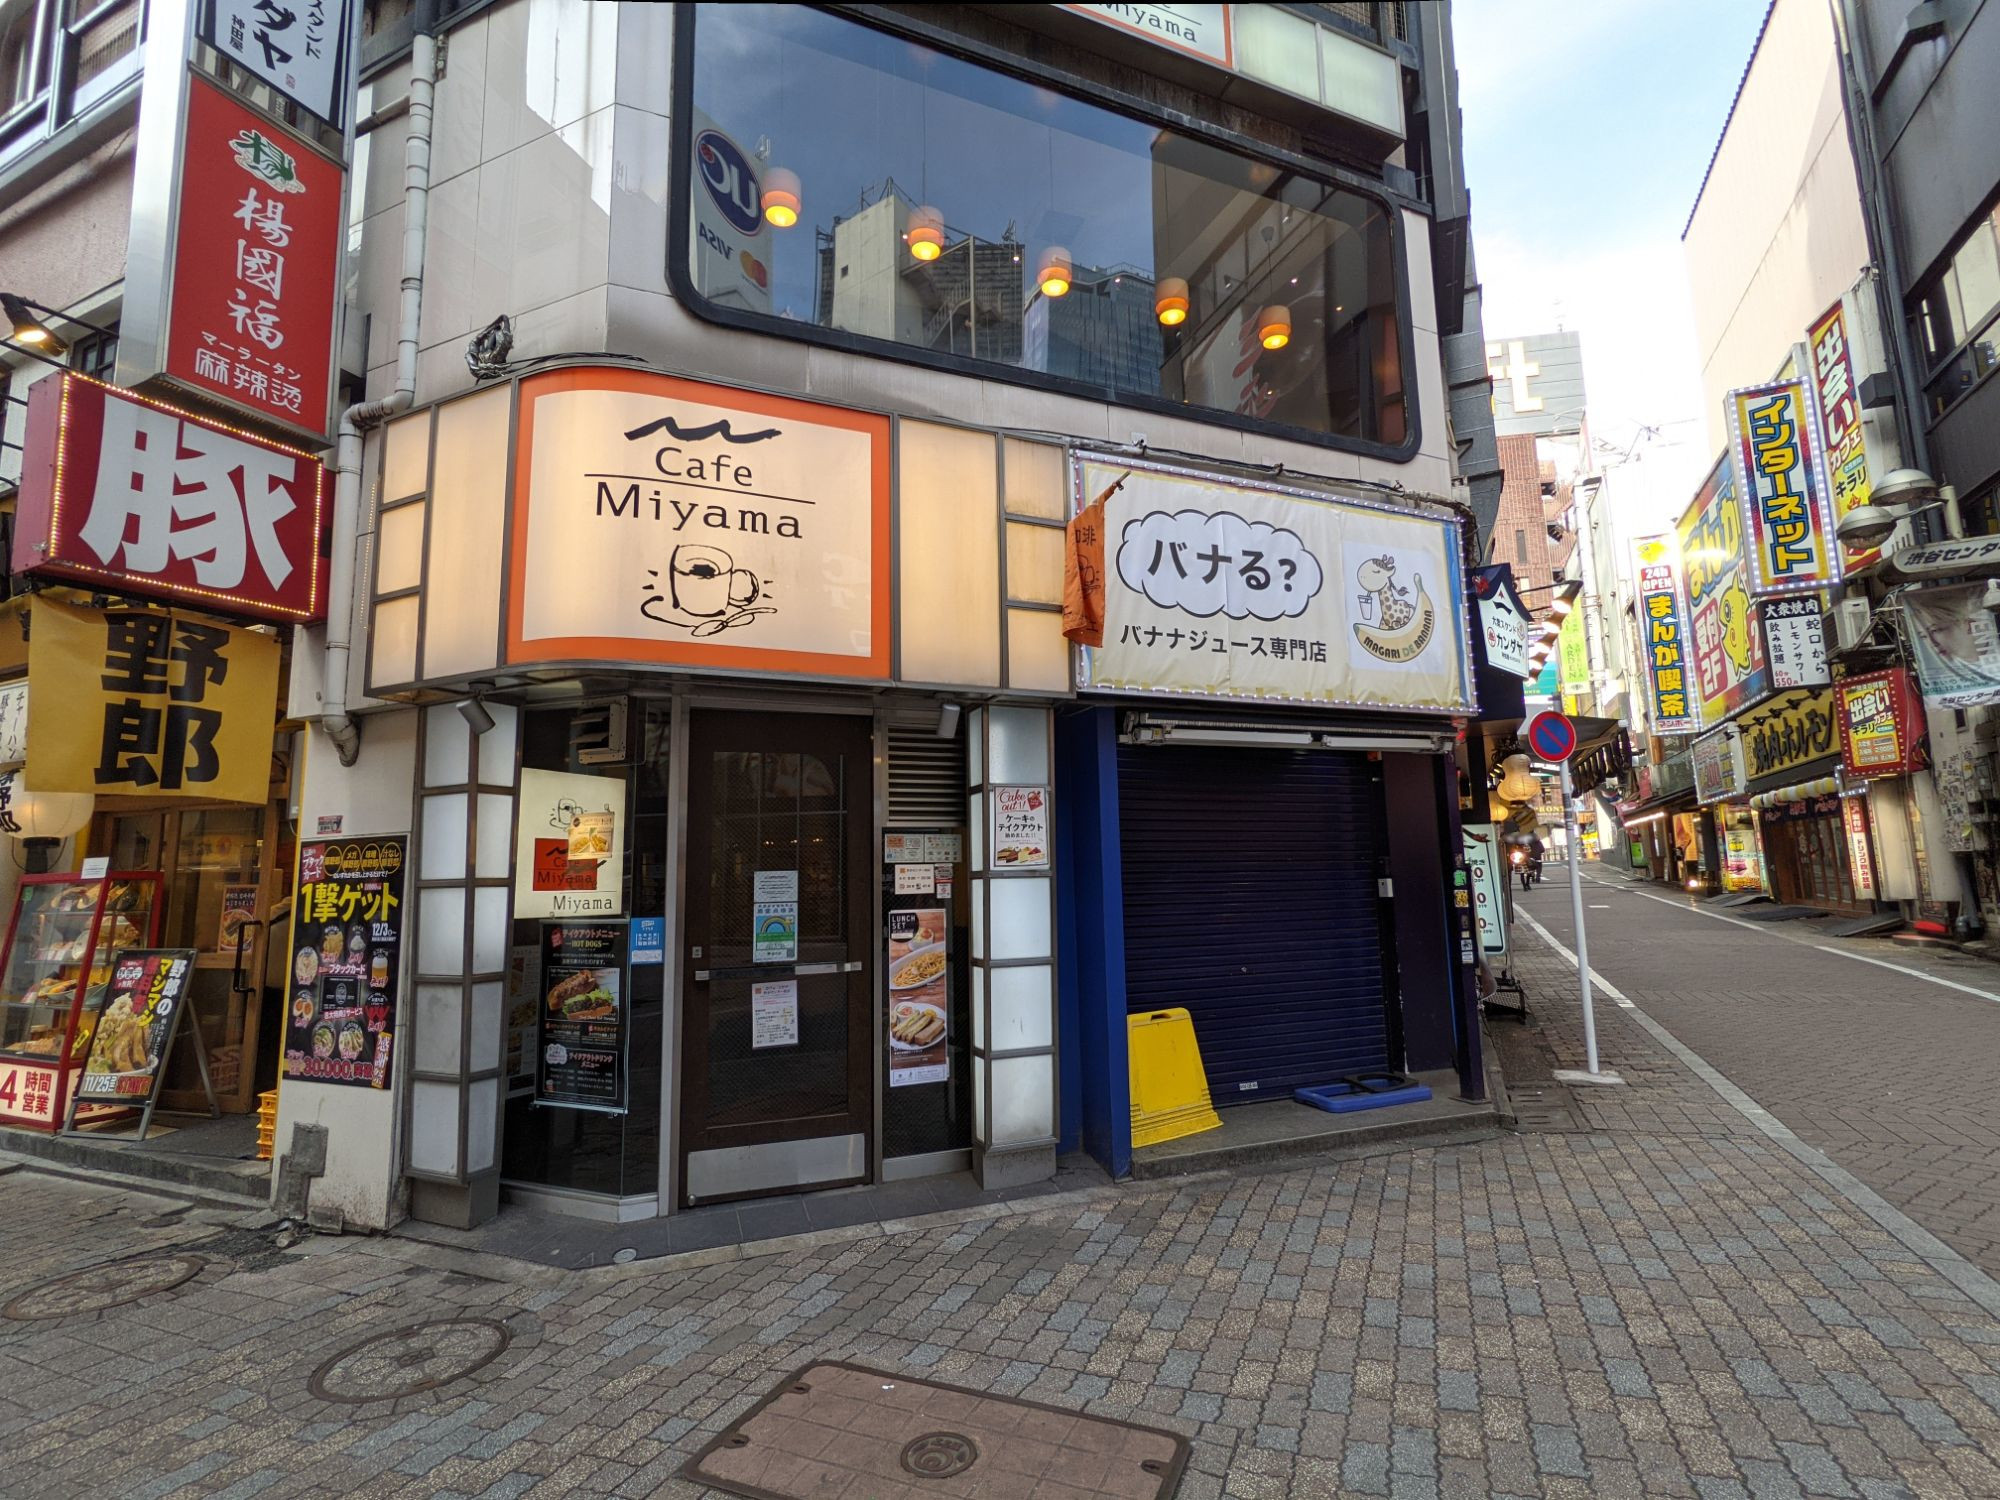 Cafe Miyama 渋谷センター街店